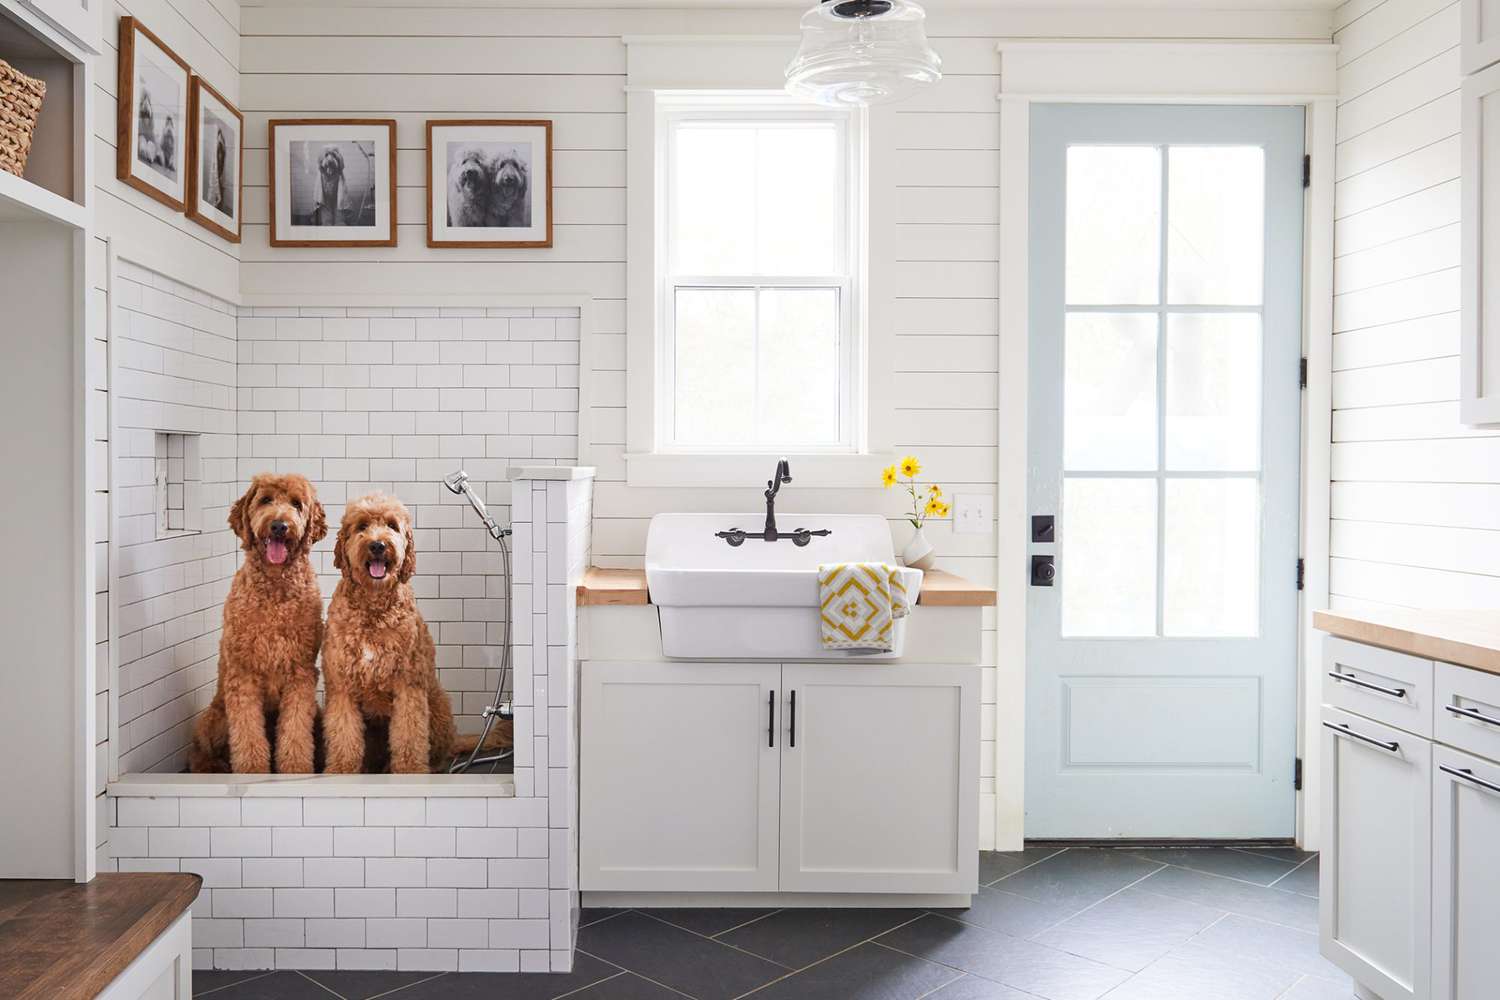 two-dogs-in-a-dog-wash-station-2000-95e1c34be2994c80b3a3197e2f5118da.jpg